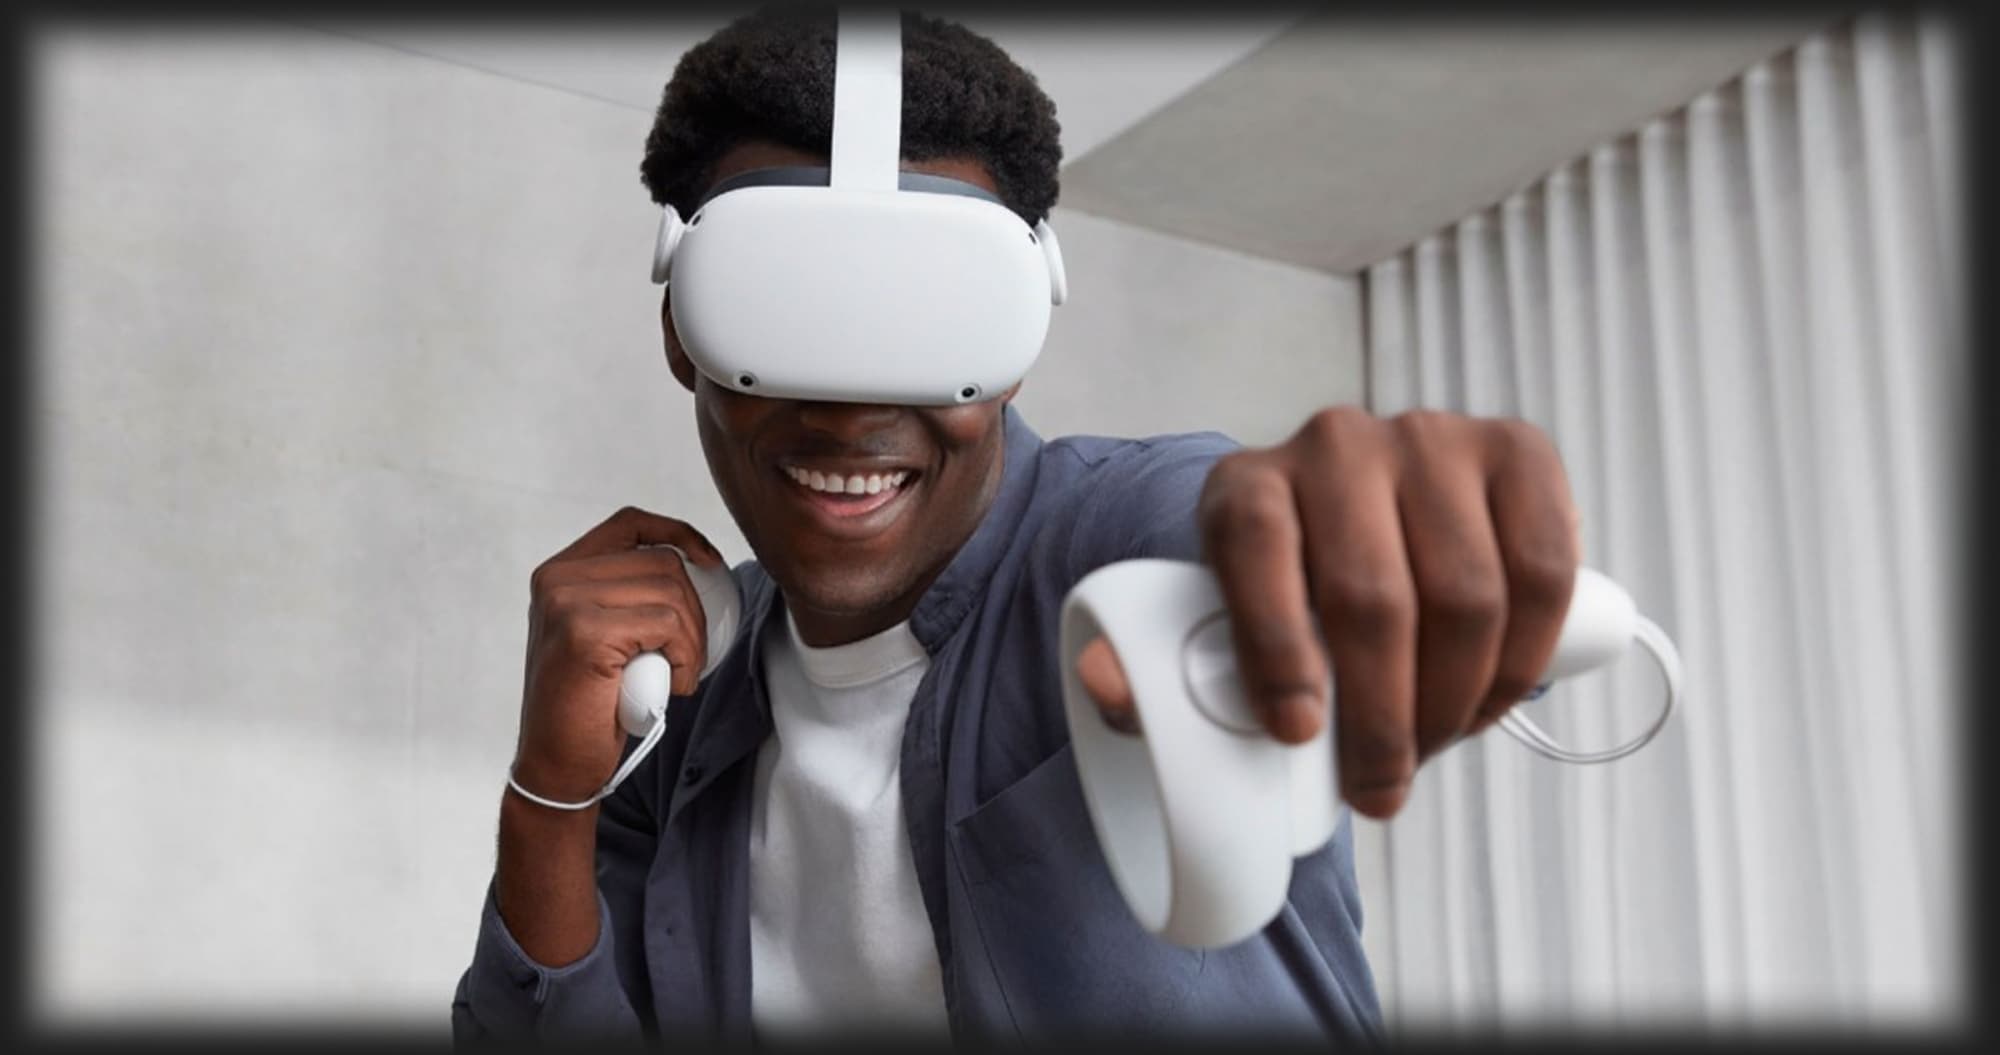 Окуляри віртуальної реальності Oculus Quest 2 256GB (White)